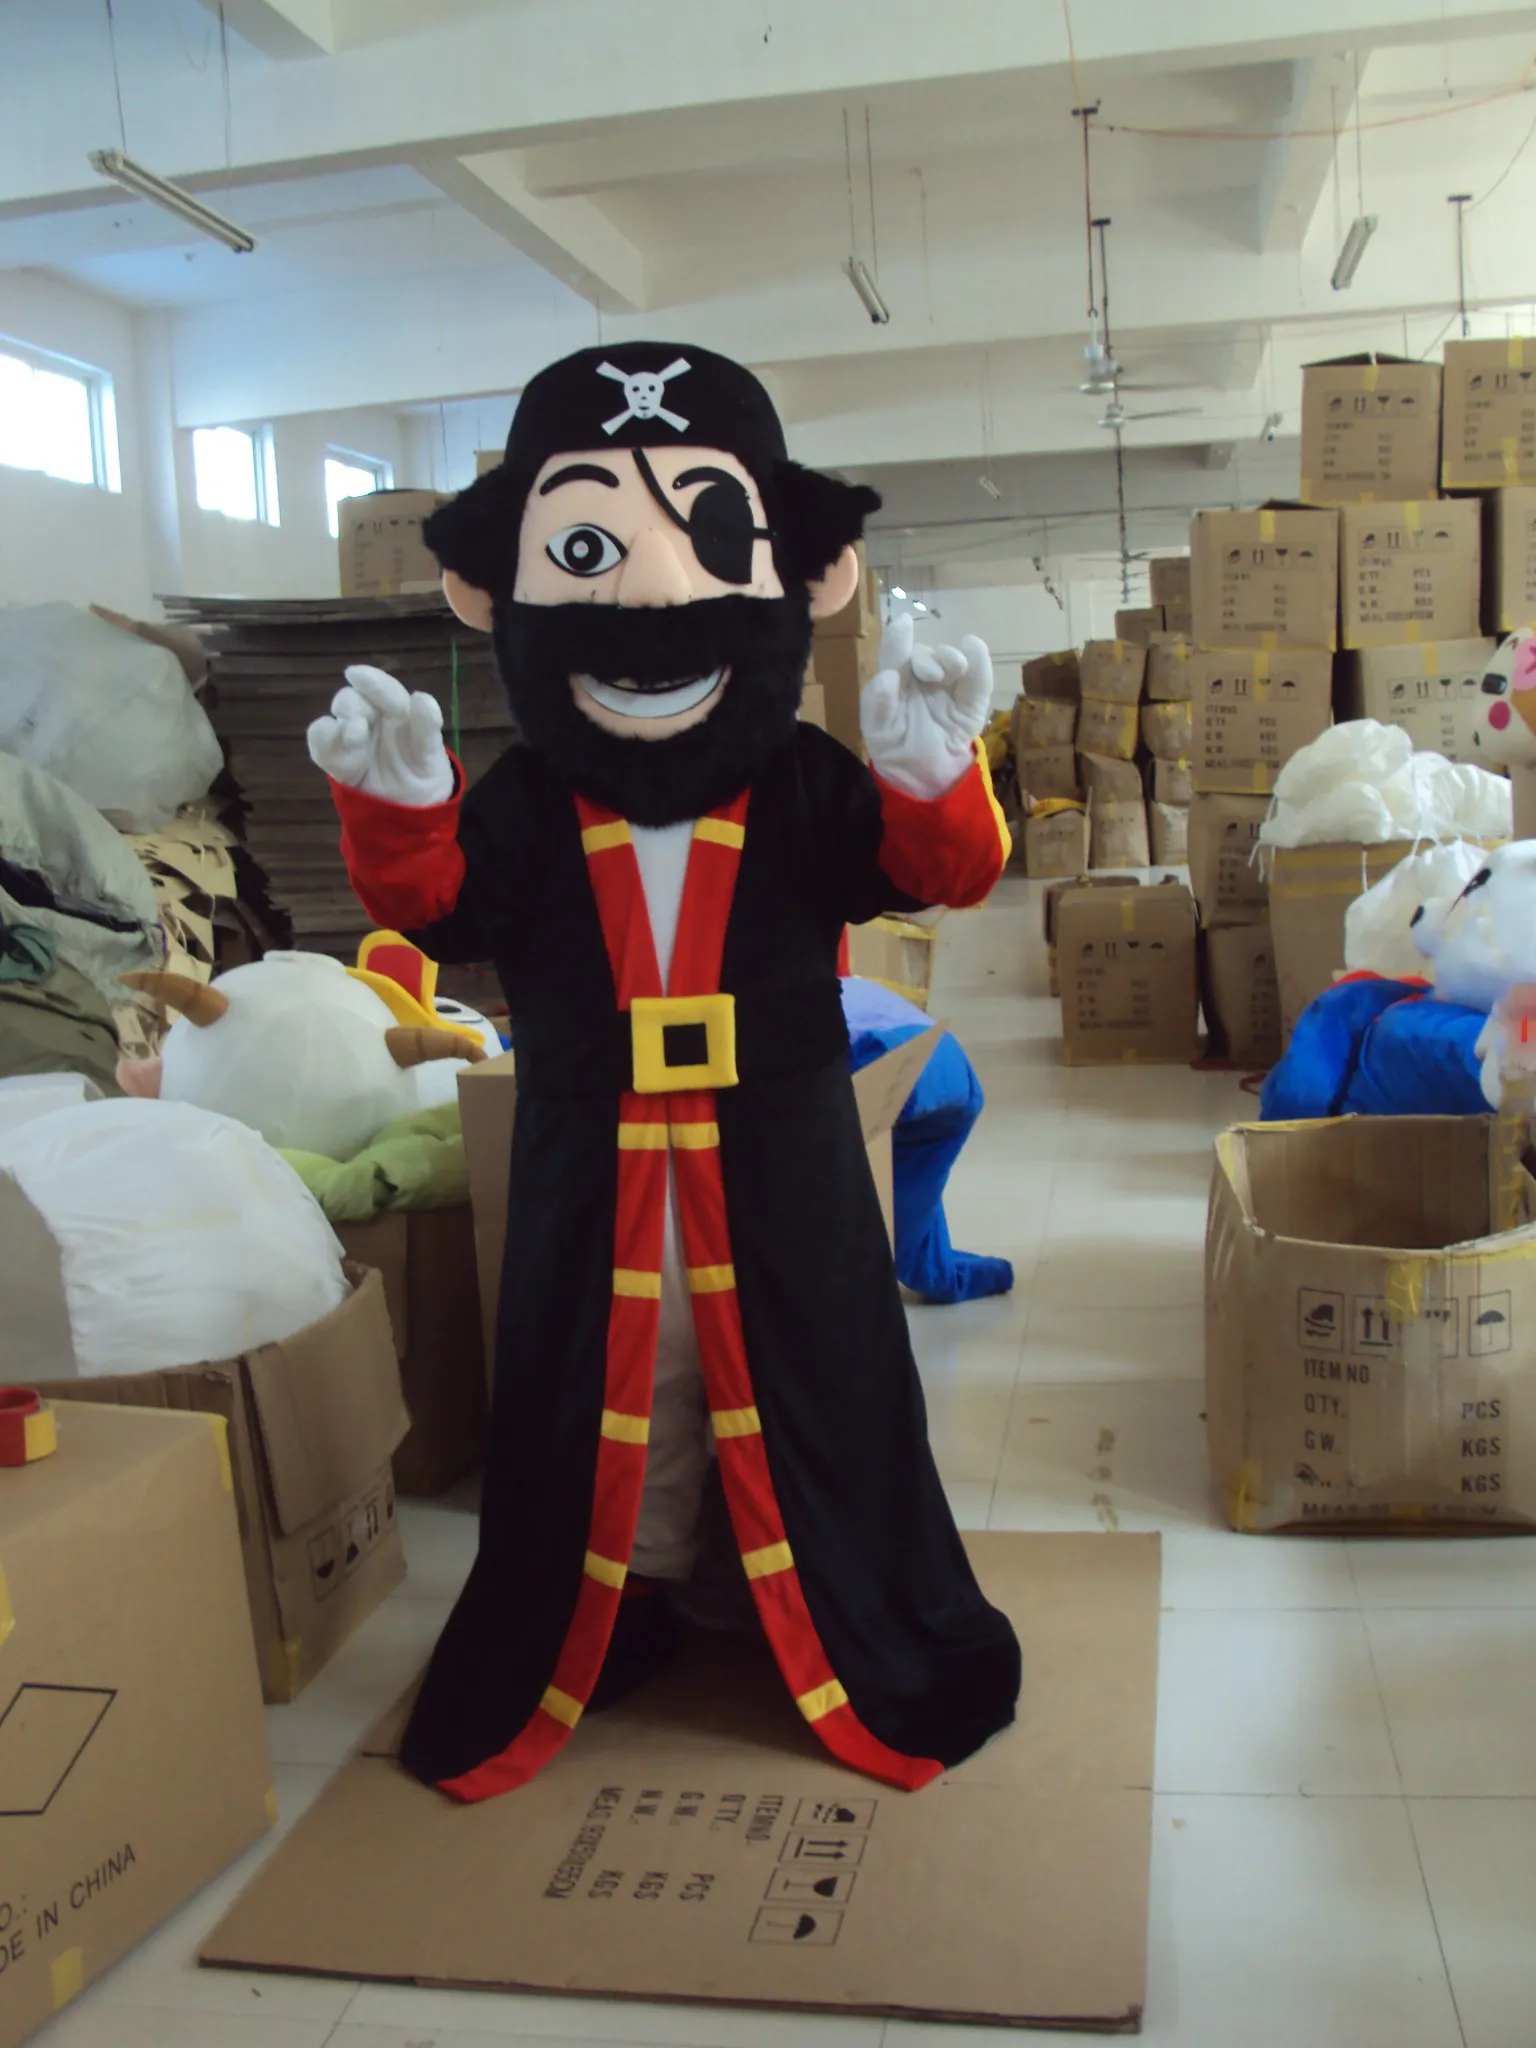 Пиратский костюм талисмана для взрослого размера Хэллоуин мультипликационный персонаж фантазии Ddress рождественские карнавальные костюмы для чертик-вечеринка на Хэллоуин